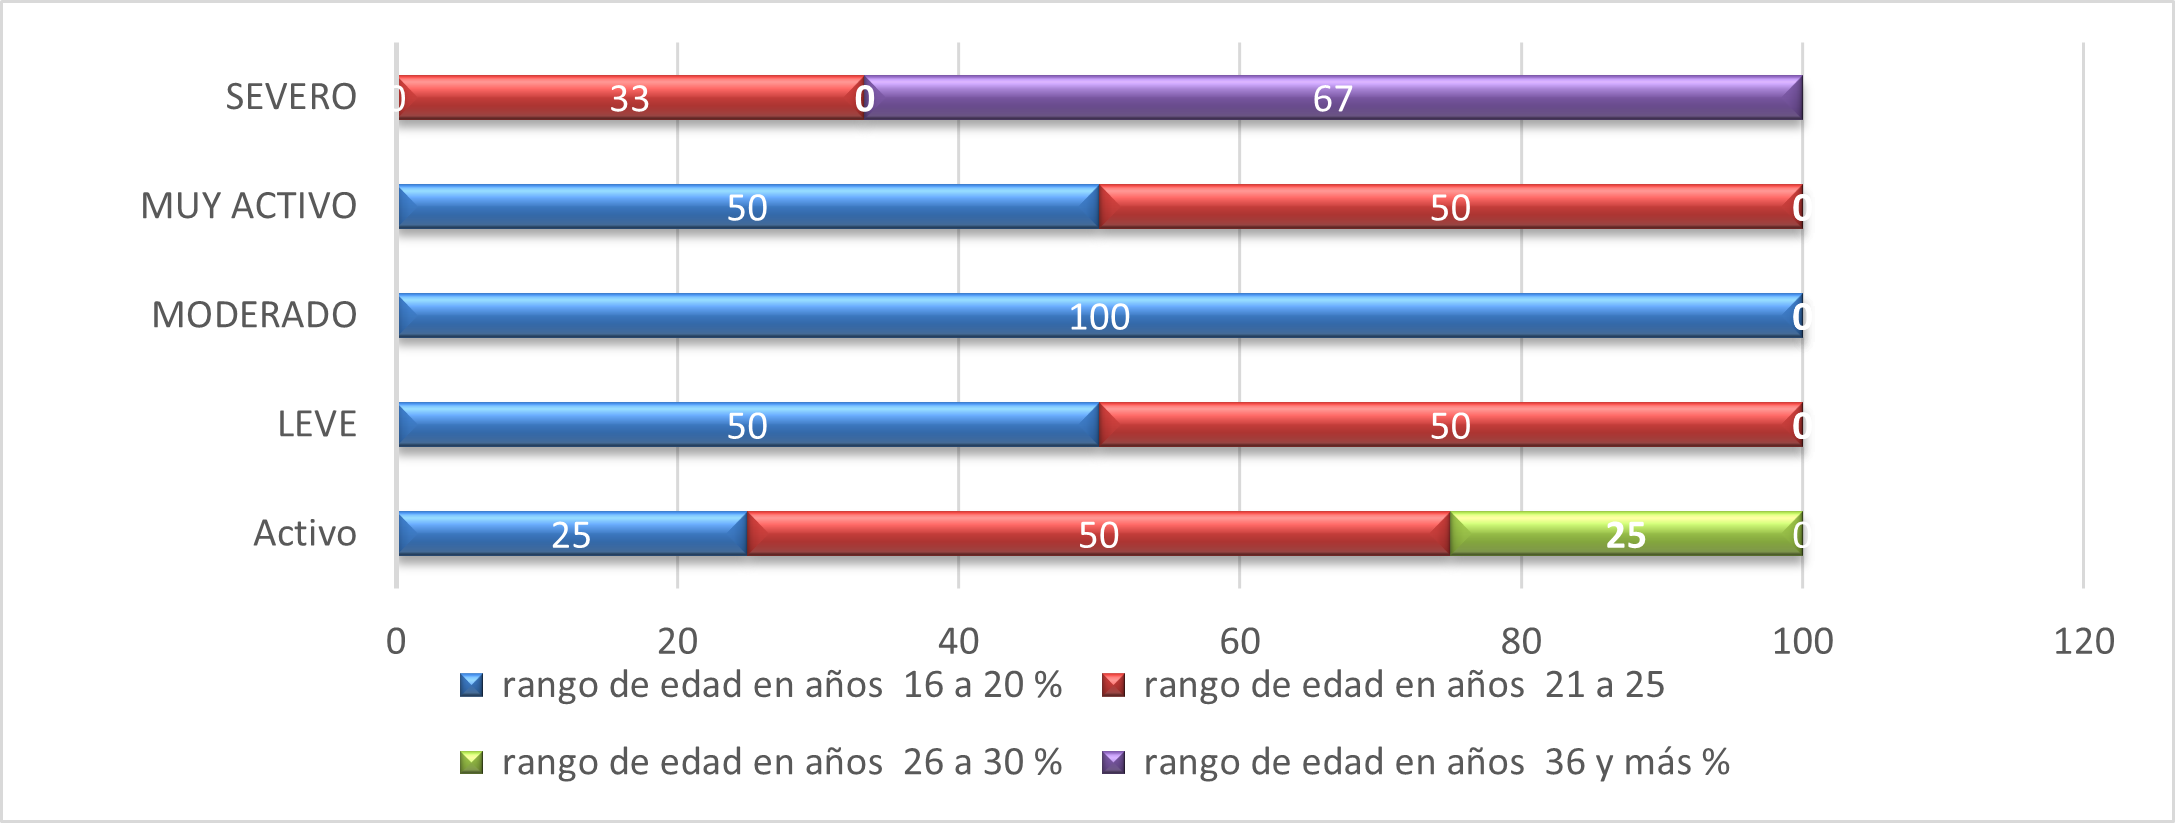 Gráfico de barra
porcentual del nivel de sedentarismo en relación con la edad un grupo de
gestantes, Veraguas, 2019